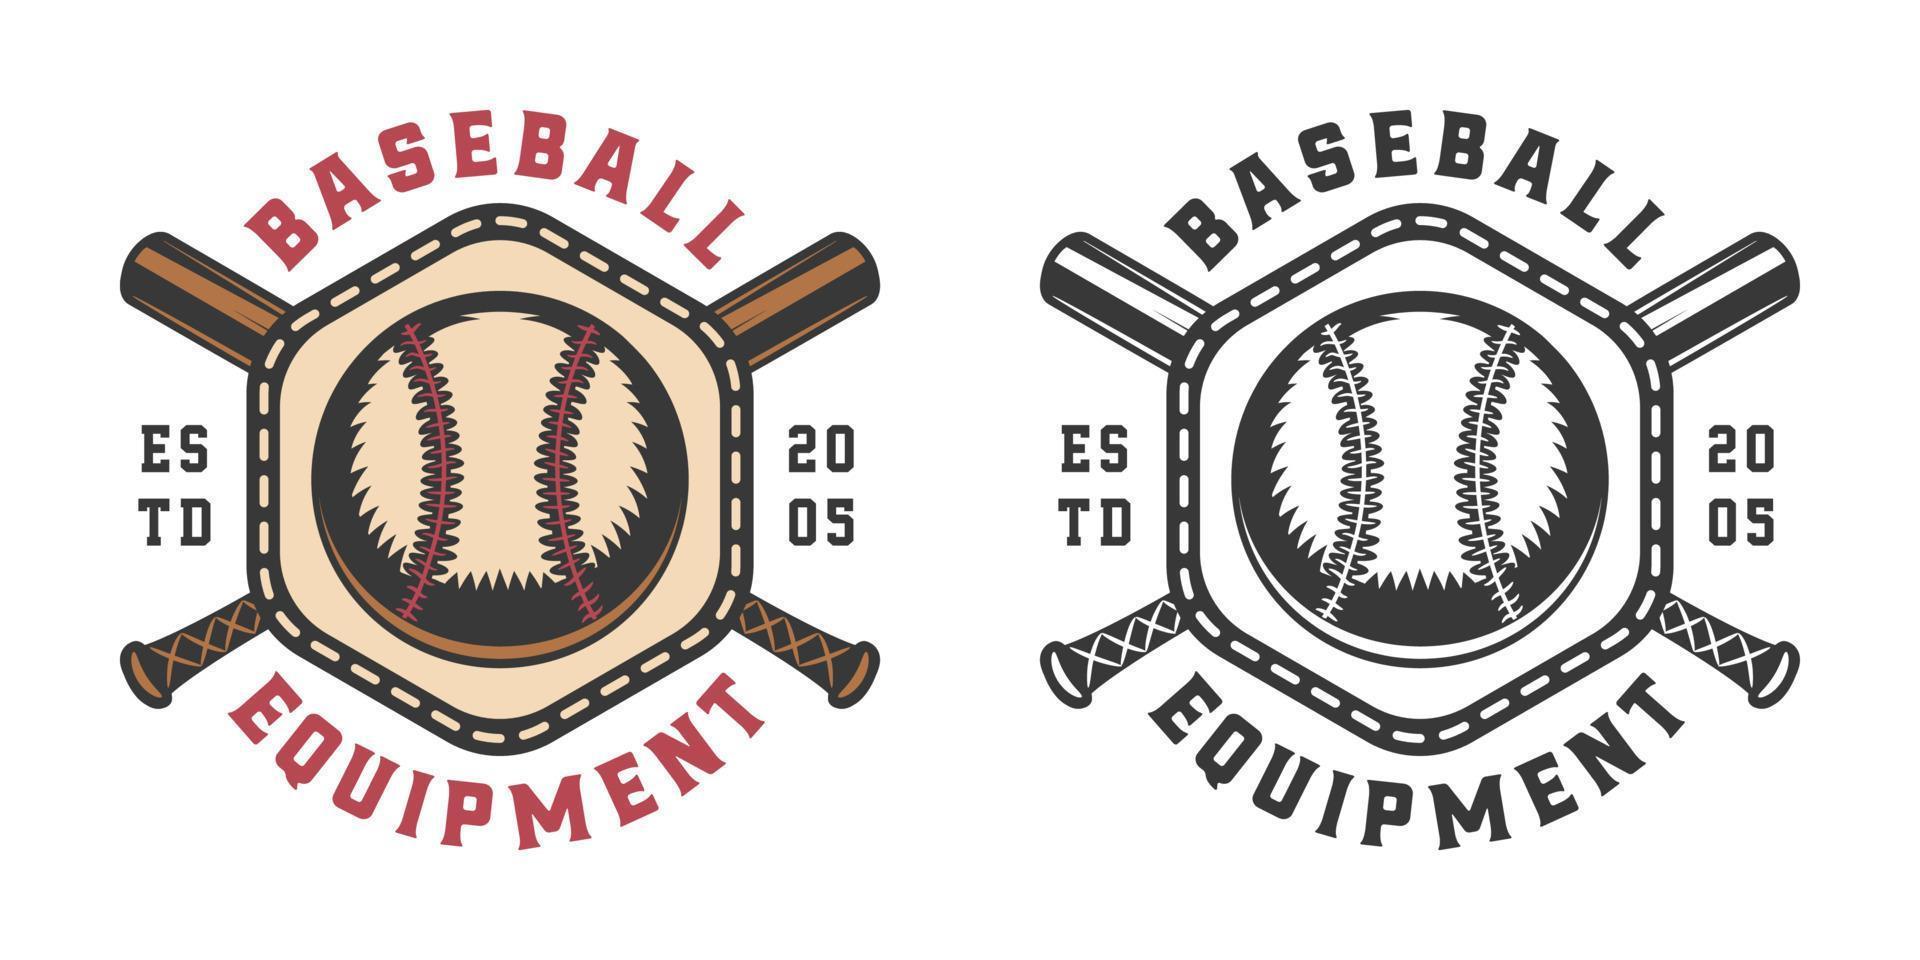 Vintage ▾ retrò baseball sport emblema, logo, distintivo, etichetta. marchio, manifesto o Stampa. monocromatico grafico arte. vettore illustrazione.